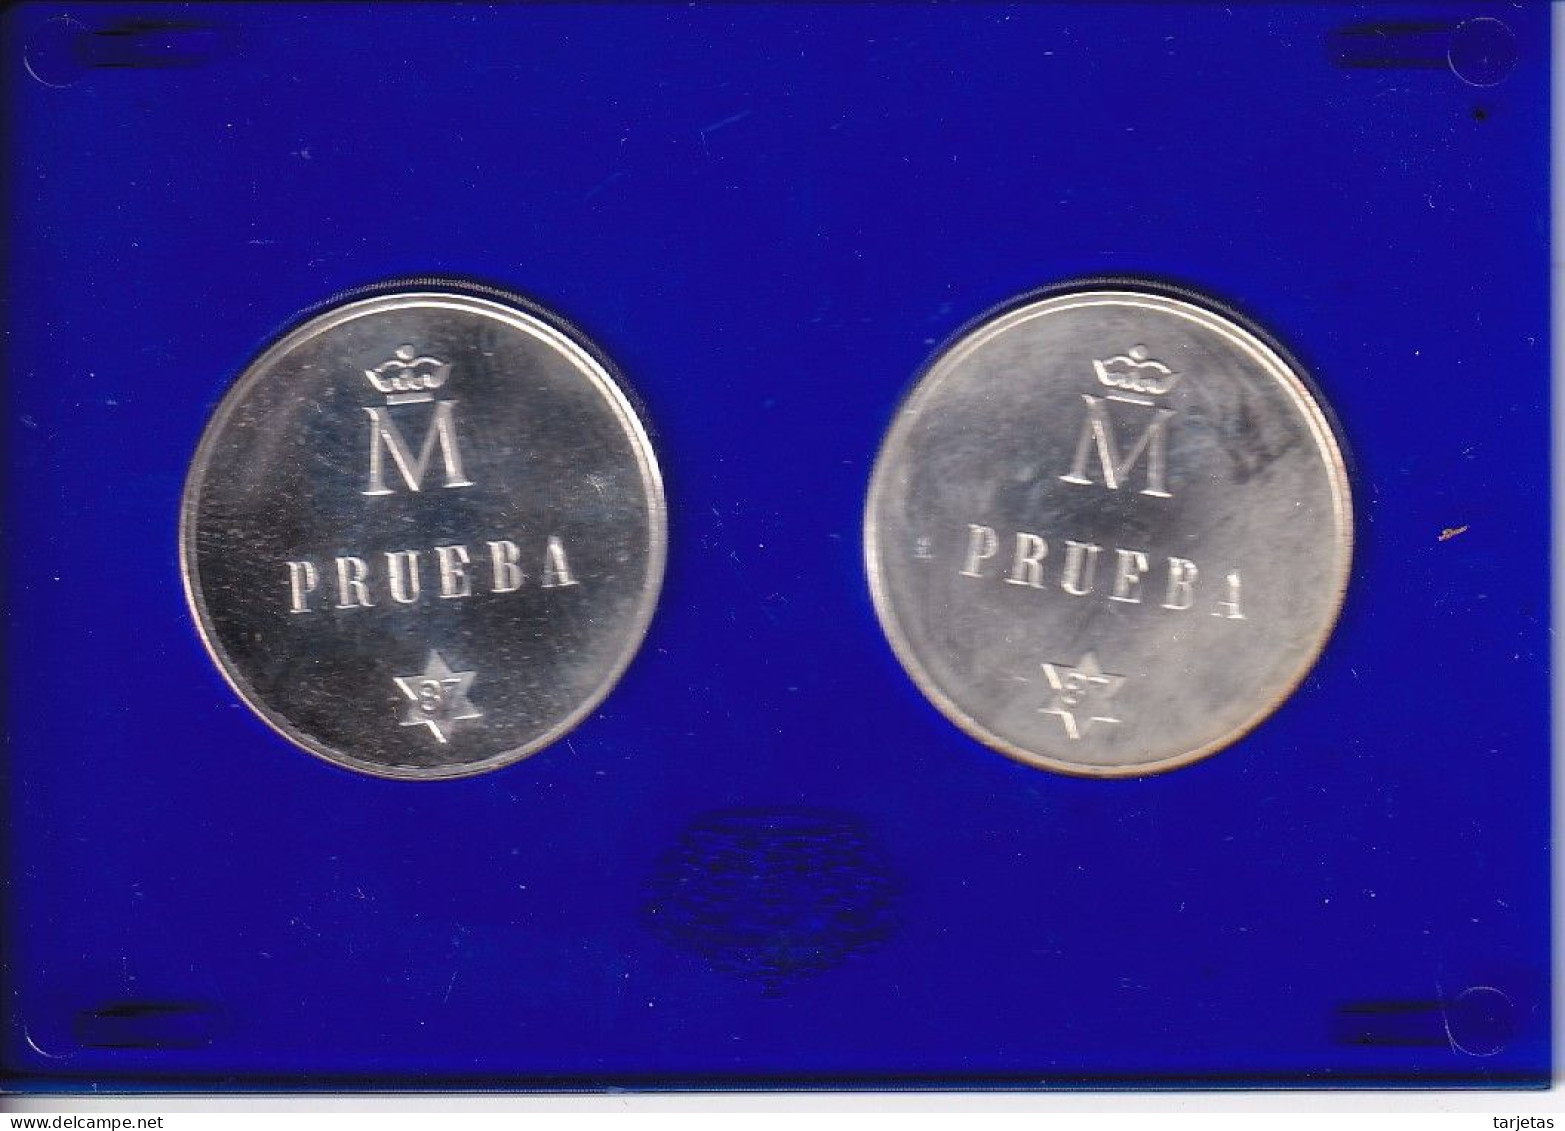 MONEDAS DE PLATA DE PRUEBA DE ESPAÑA DE 500 PESETAS DEL AÑO 1987 EN ESTUCHE ORIGINAL (COIN) - Sets Sin Usar &  Sets De Prueba